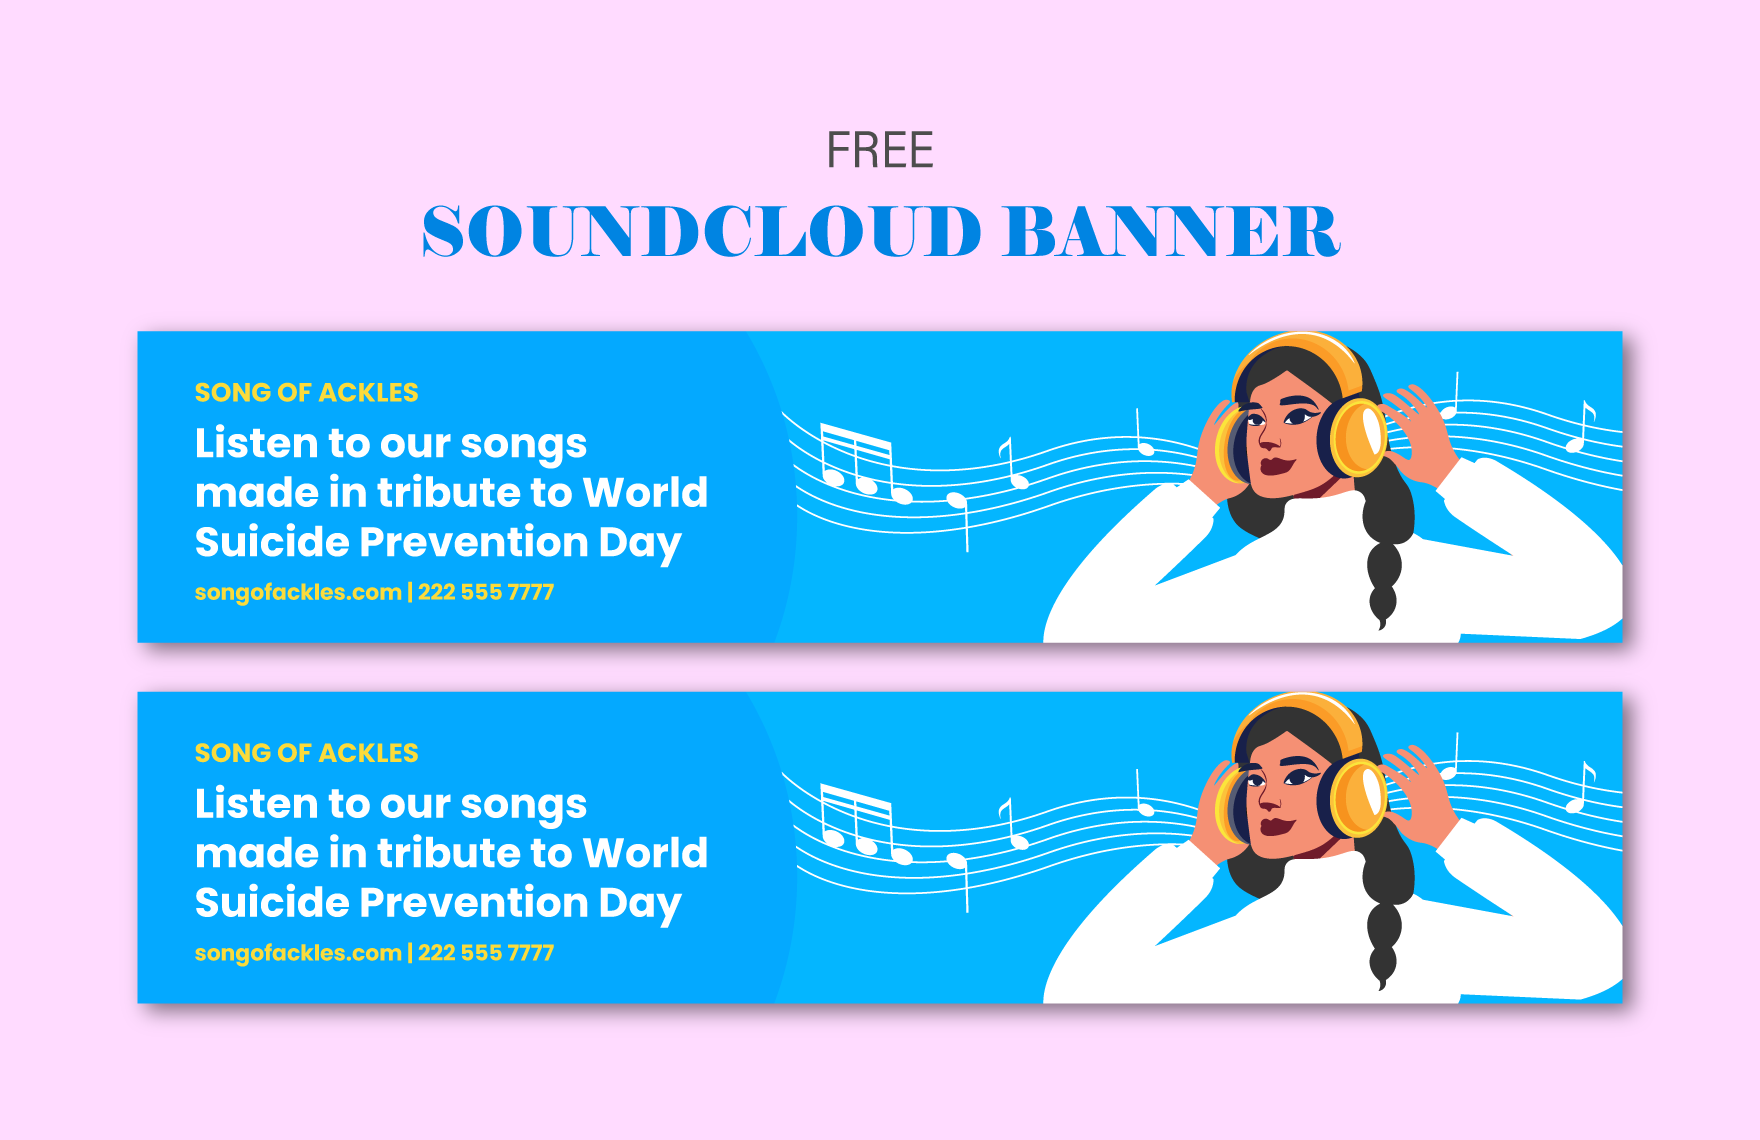 Free World Suicide Prevention Day  Soundcloud Banner in PDF, Illustrator, SVG, JPG